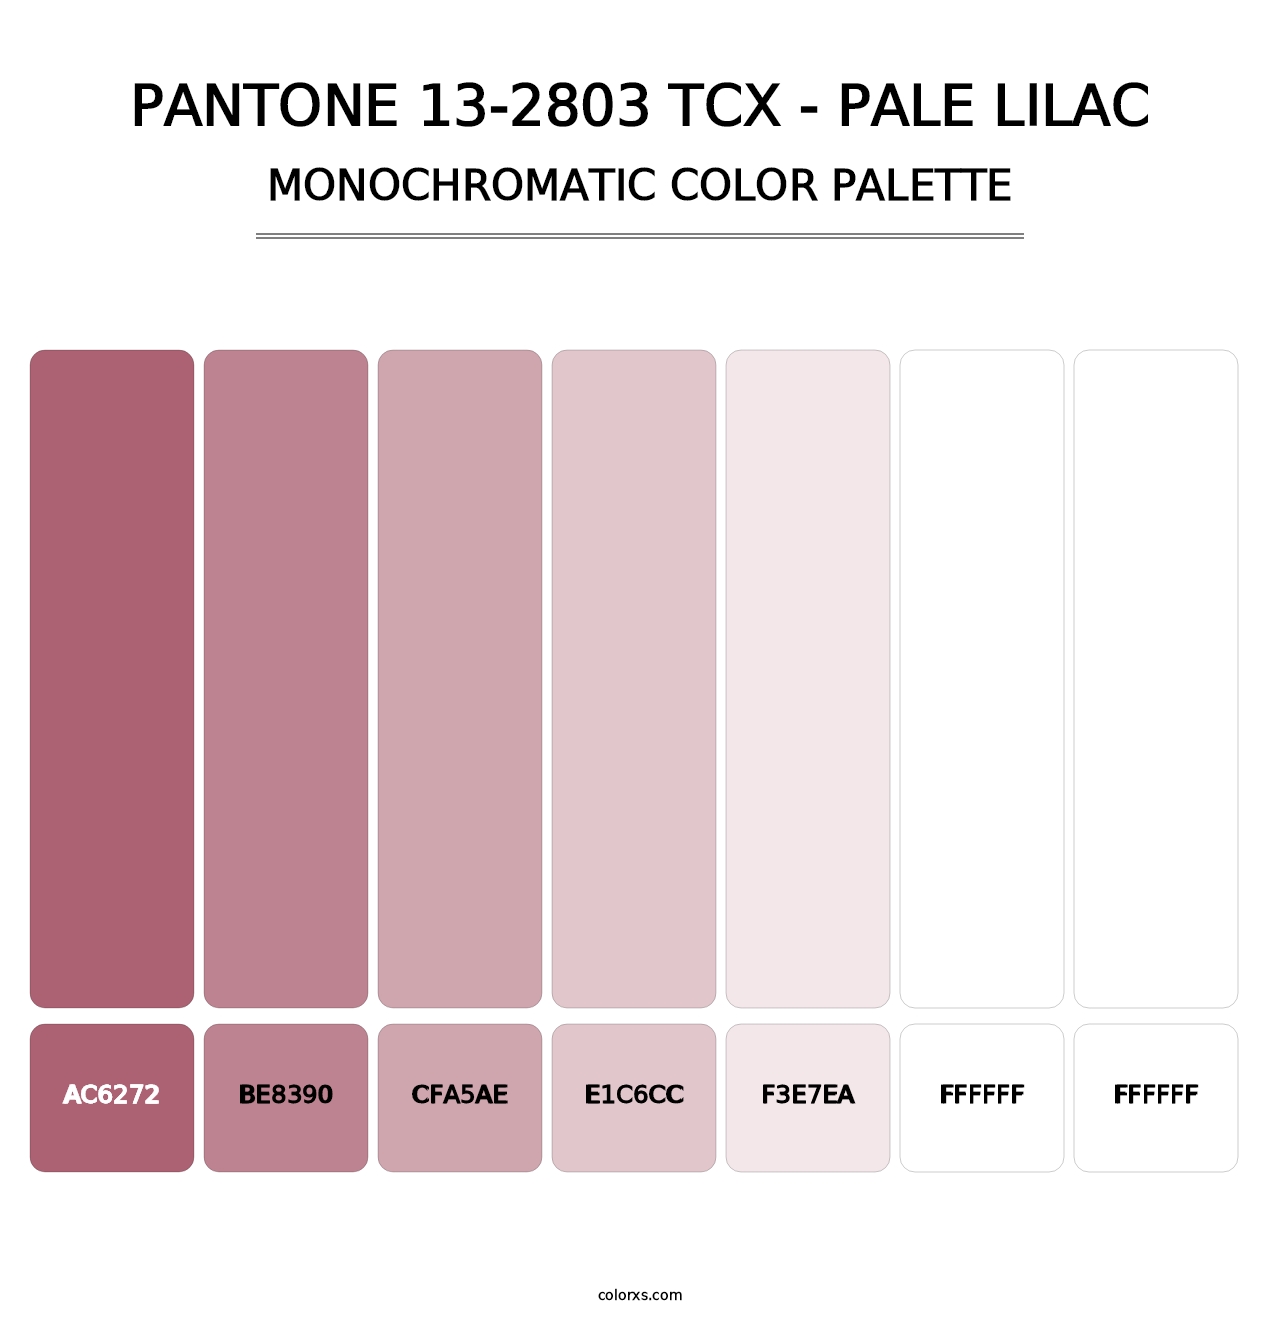 PANTONE 13-2803 TCX - Pale Lilac - Monochromatic Color Palette